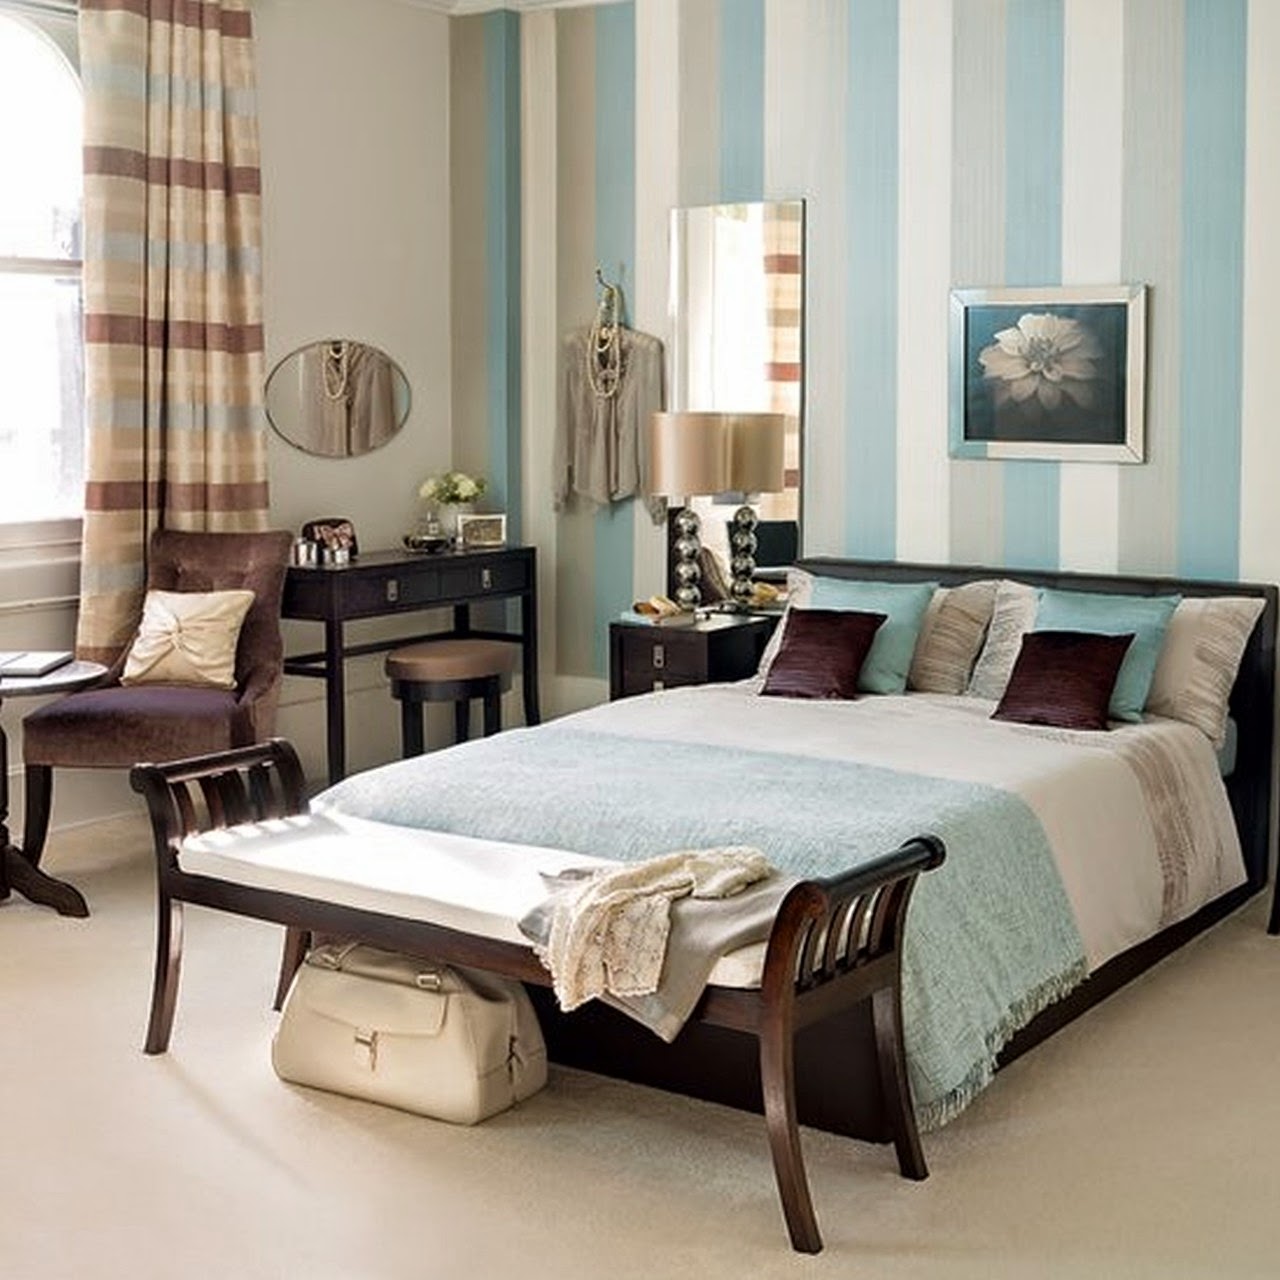 спальня в голубых оттенках: кровать с банкеткой и туалетный столик